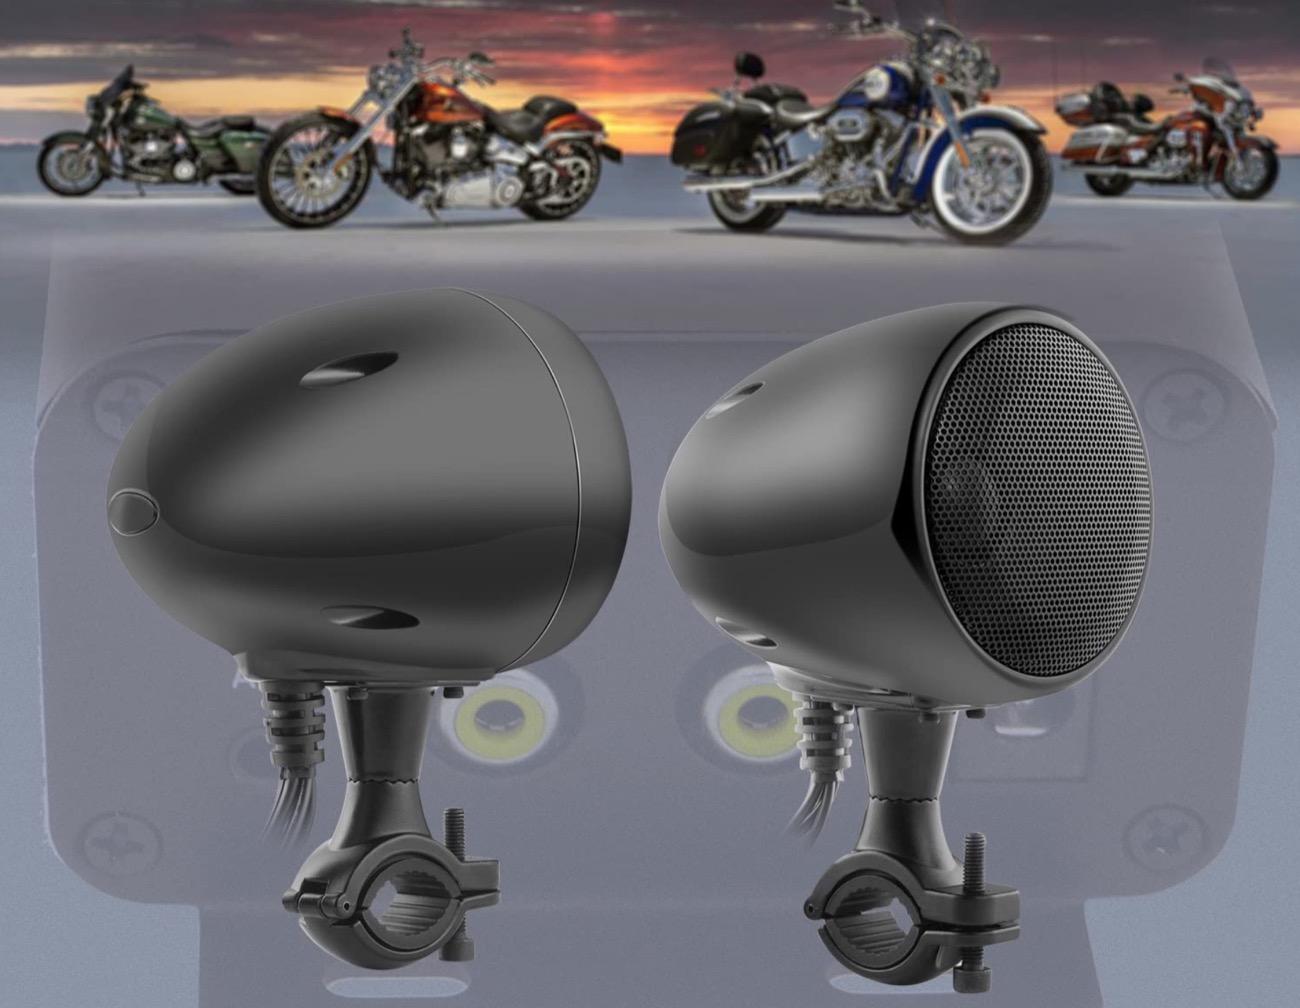 I migliori accessori Smart per moto della primavera 2023 